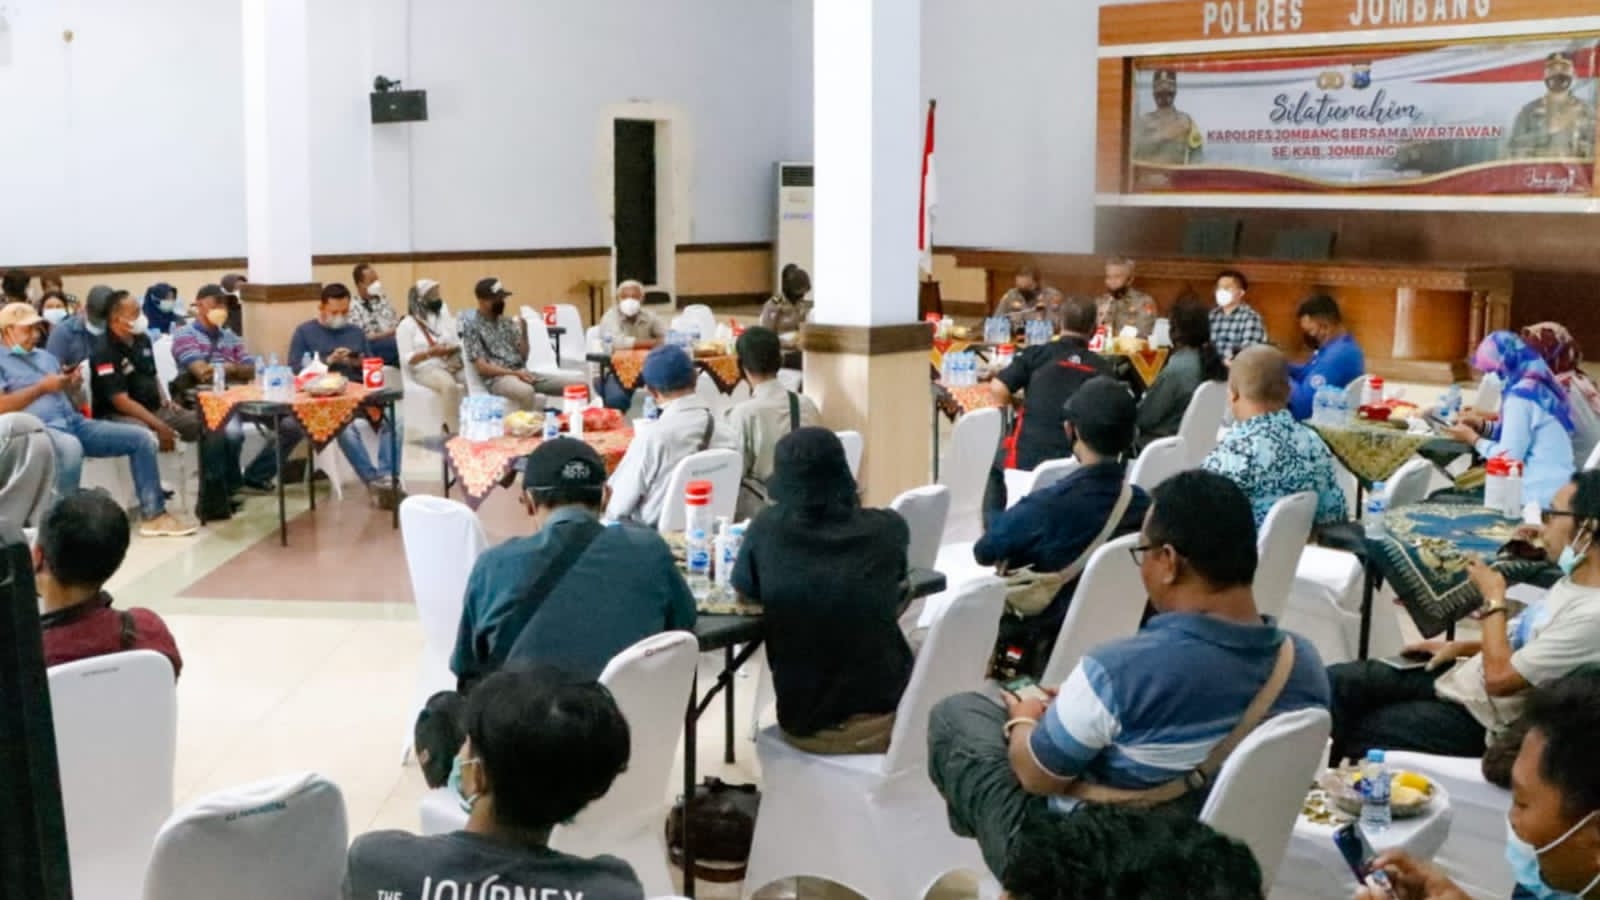 Kapolres Jombang Silaturahmi Wartawan untuk Tingkatkan Sinergitas